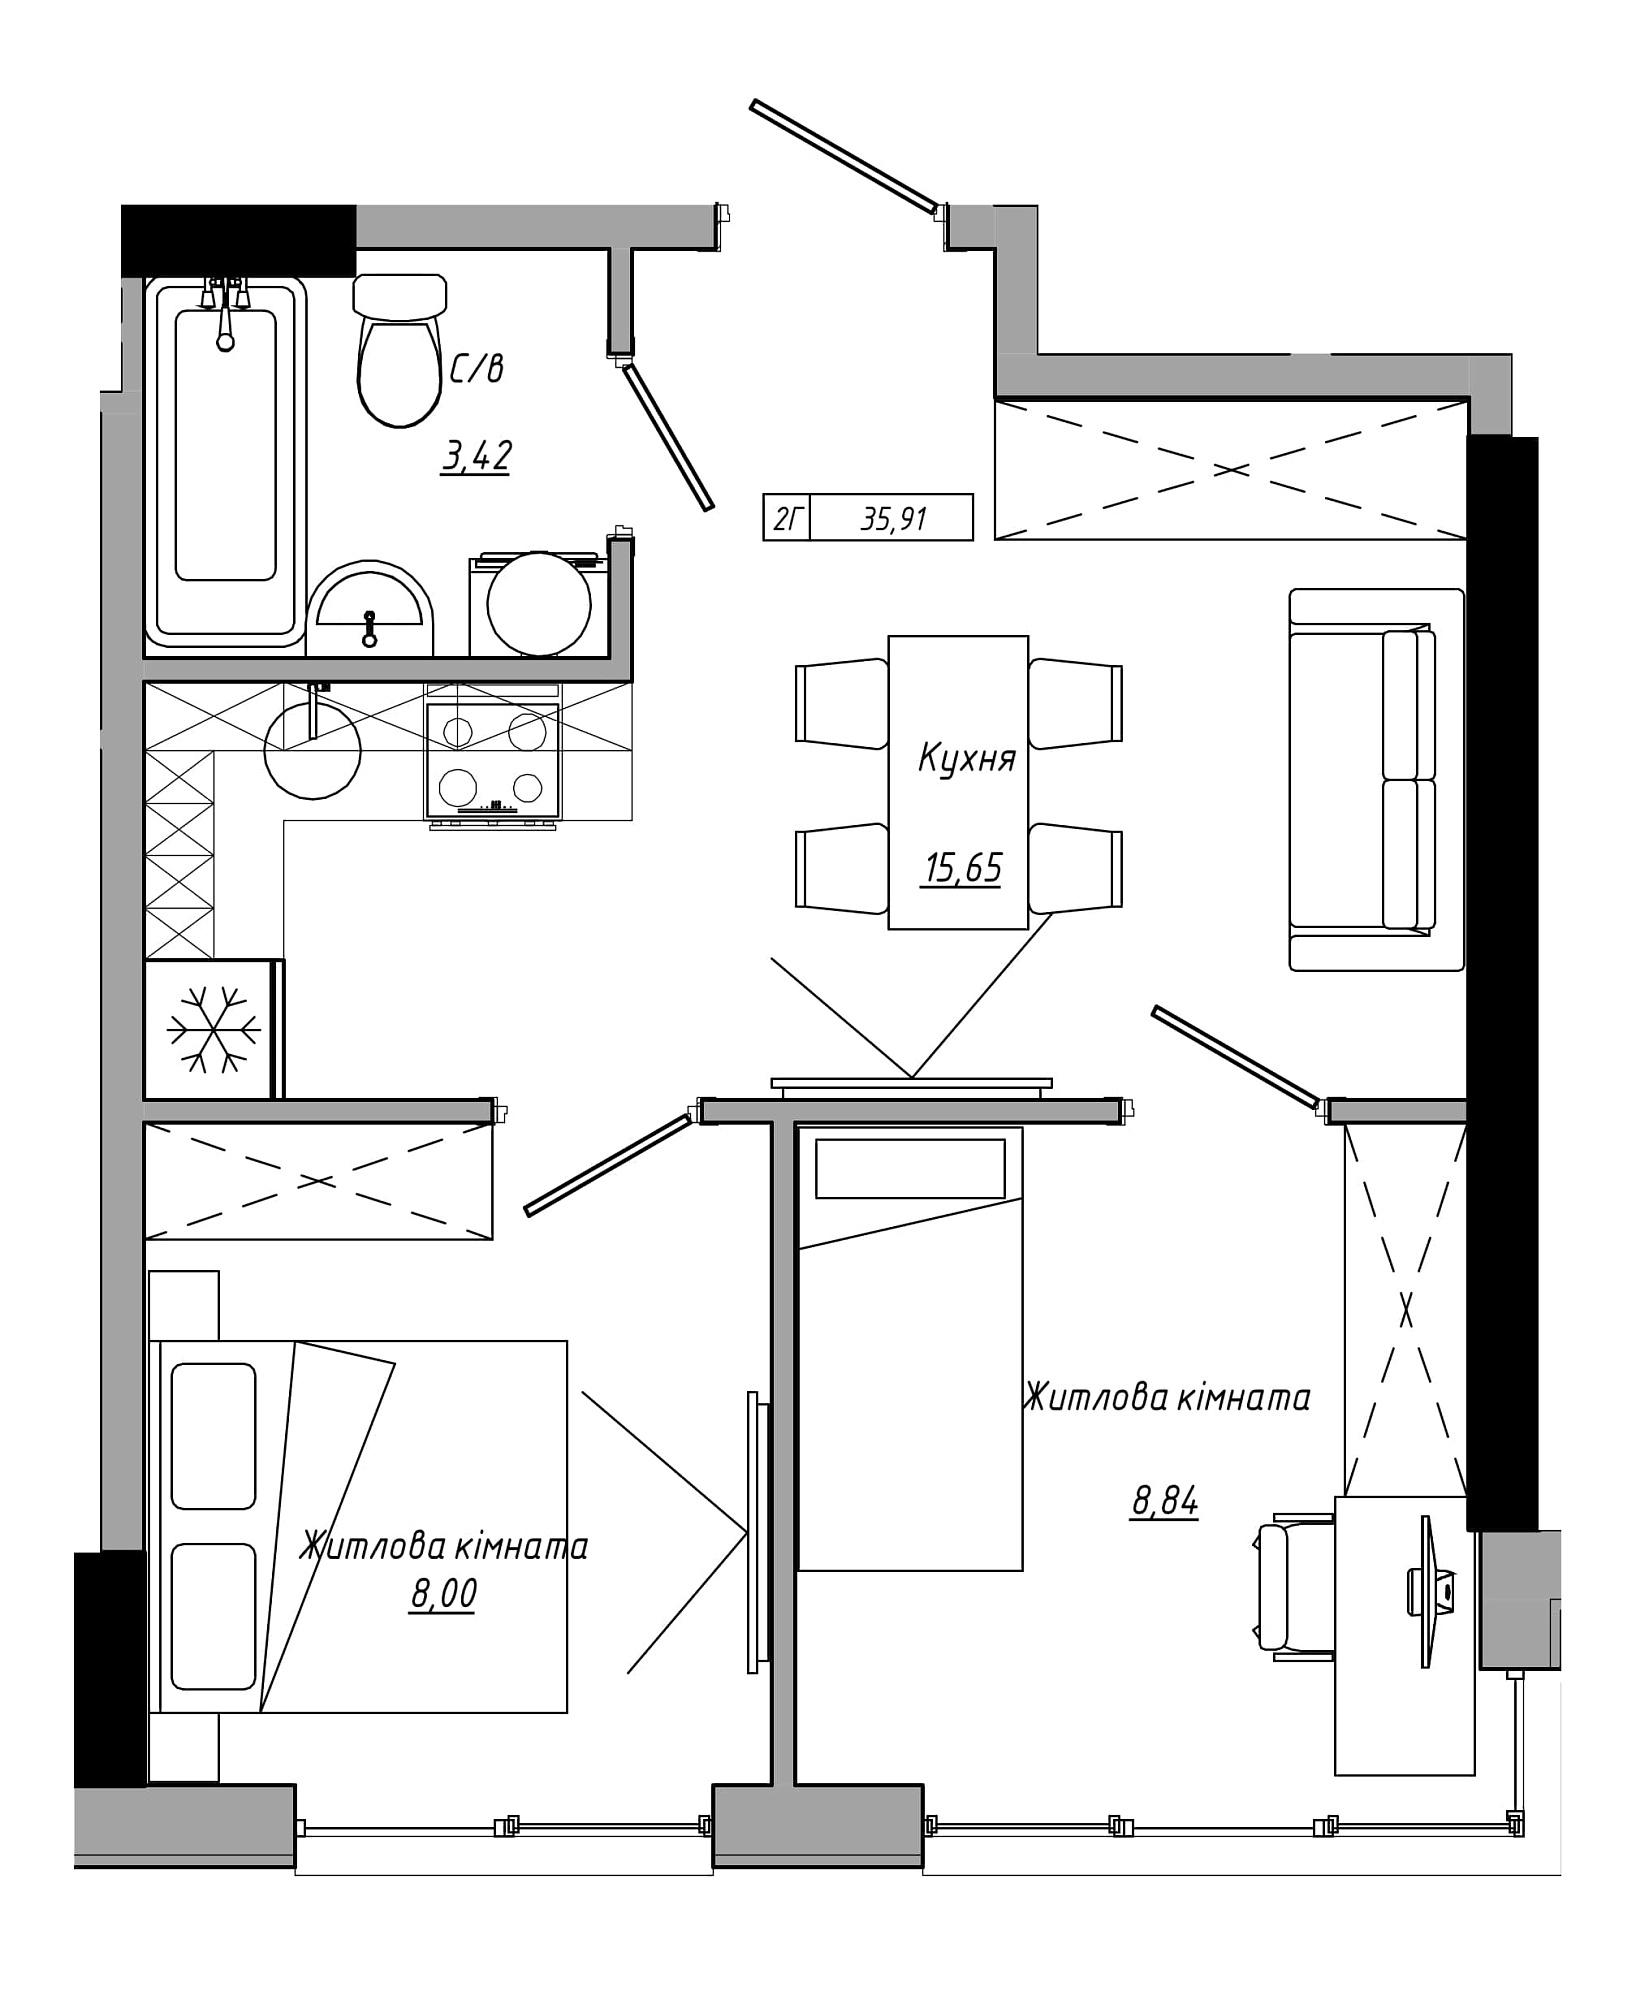 Планування 2-к квартира площею 35.91м2, AB-21-10/00019.